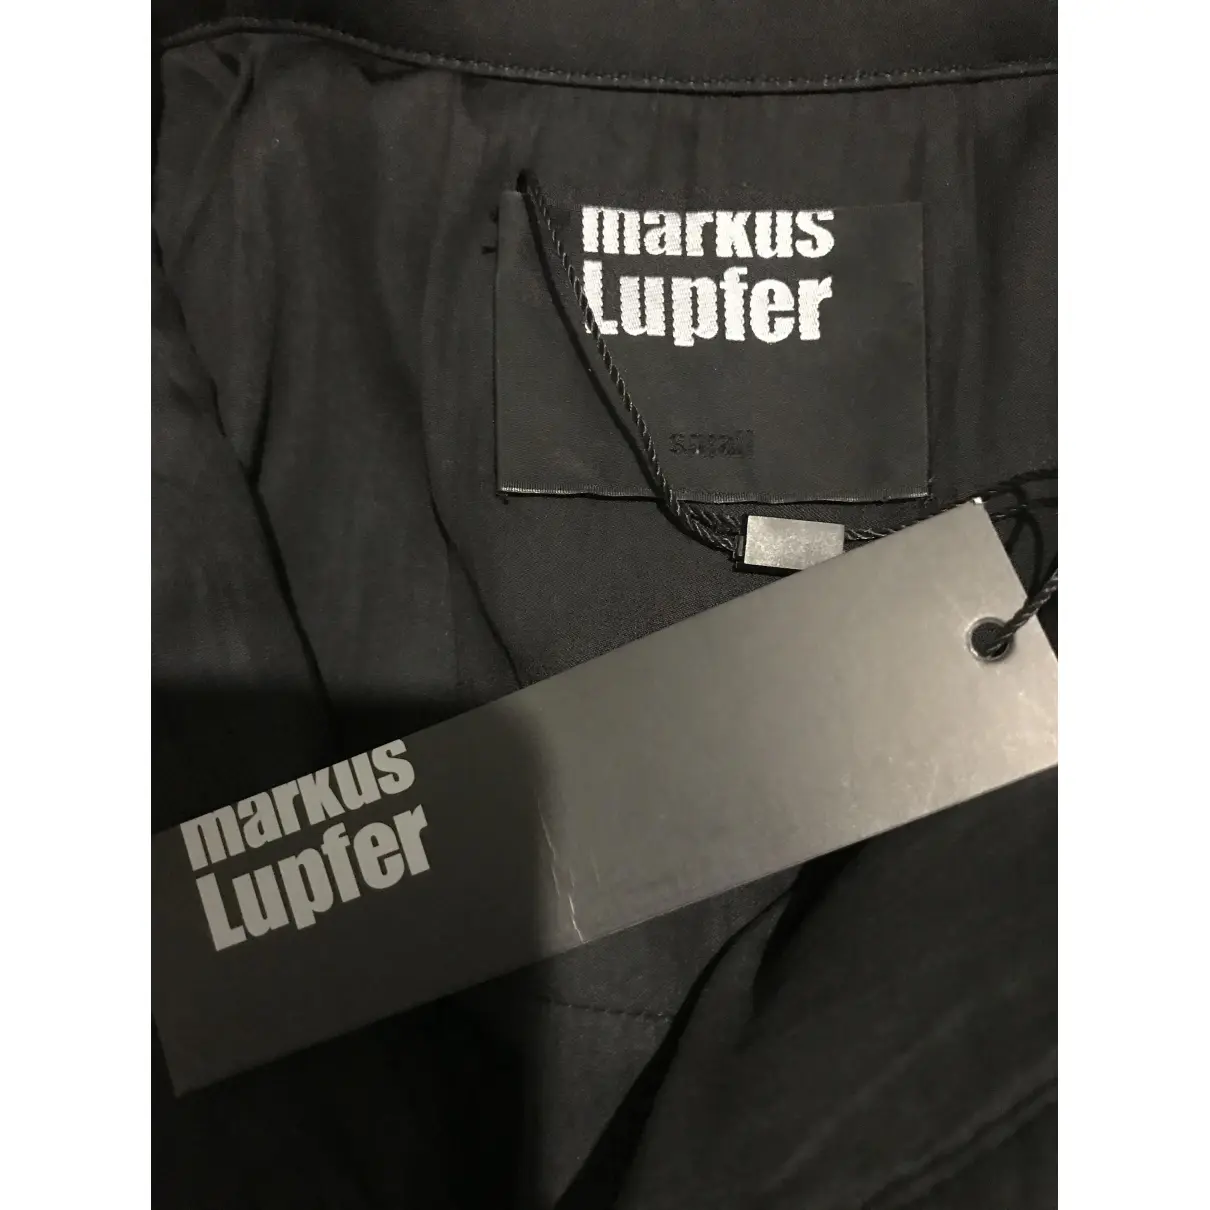 Buy Markus Lupfer Dress online